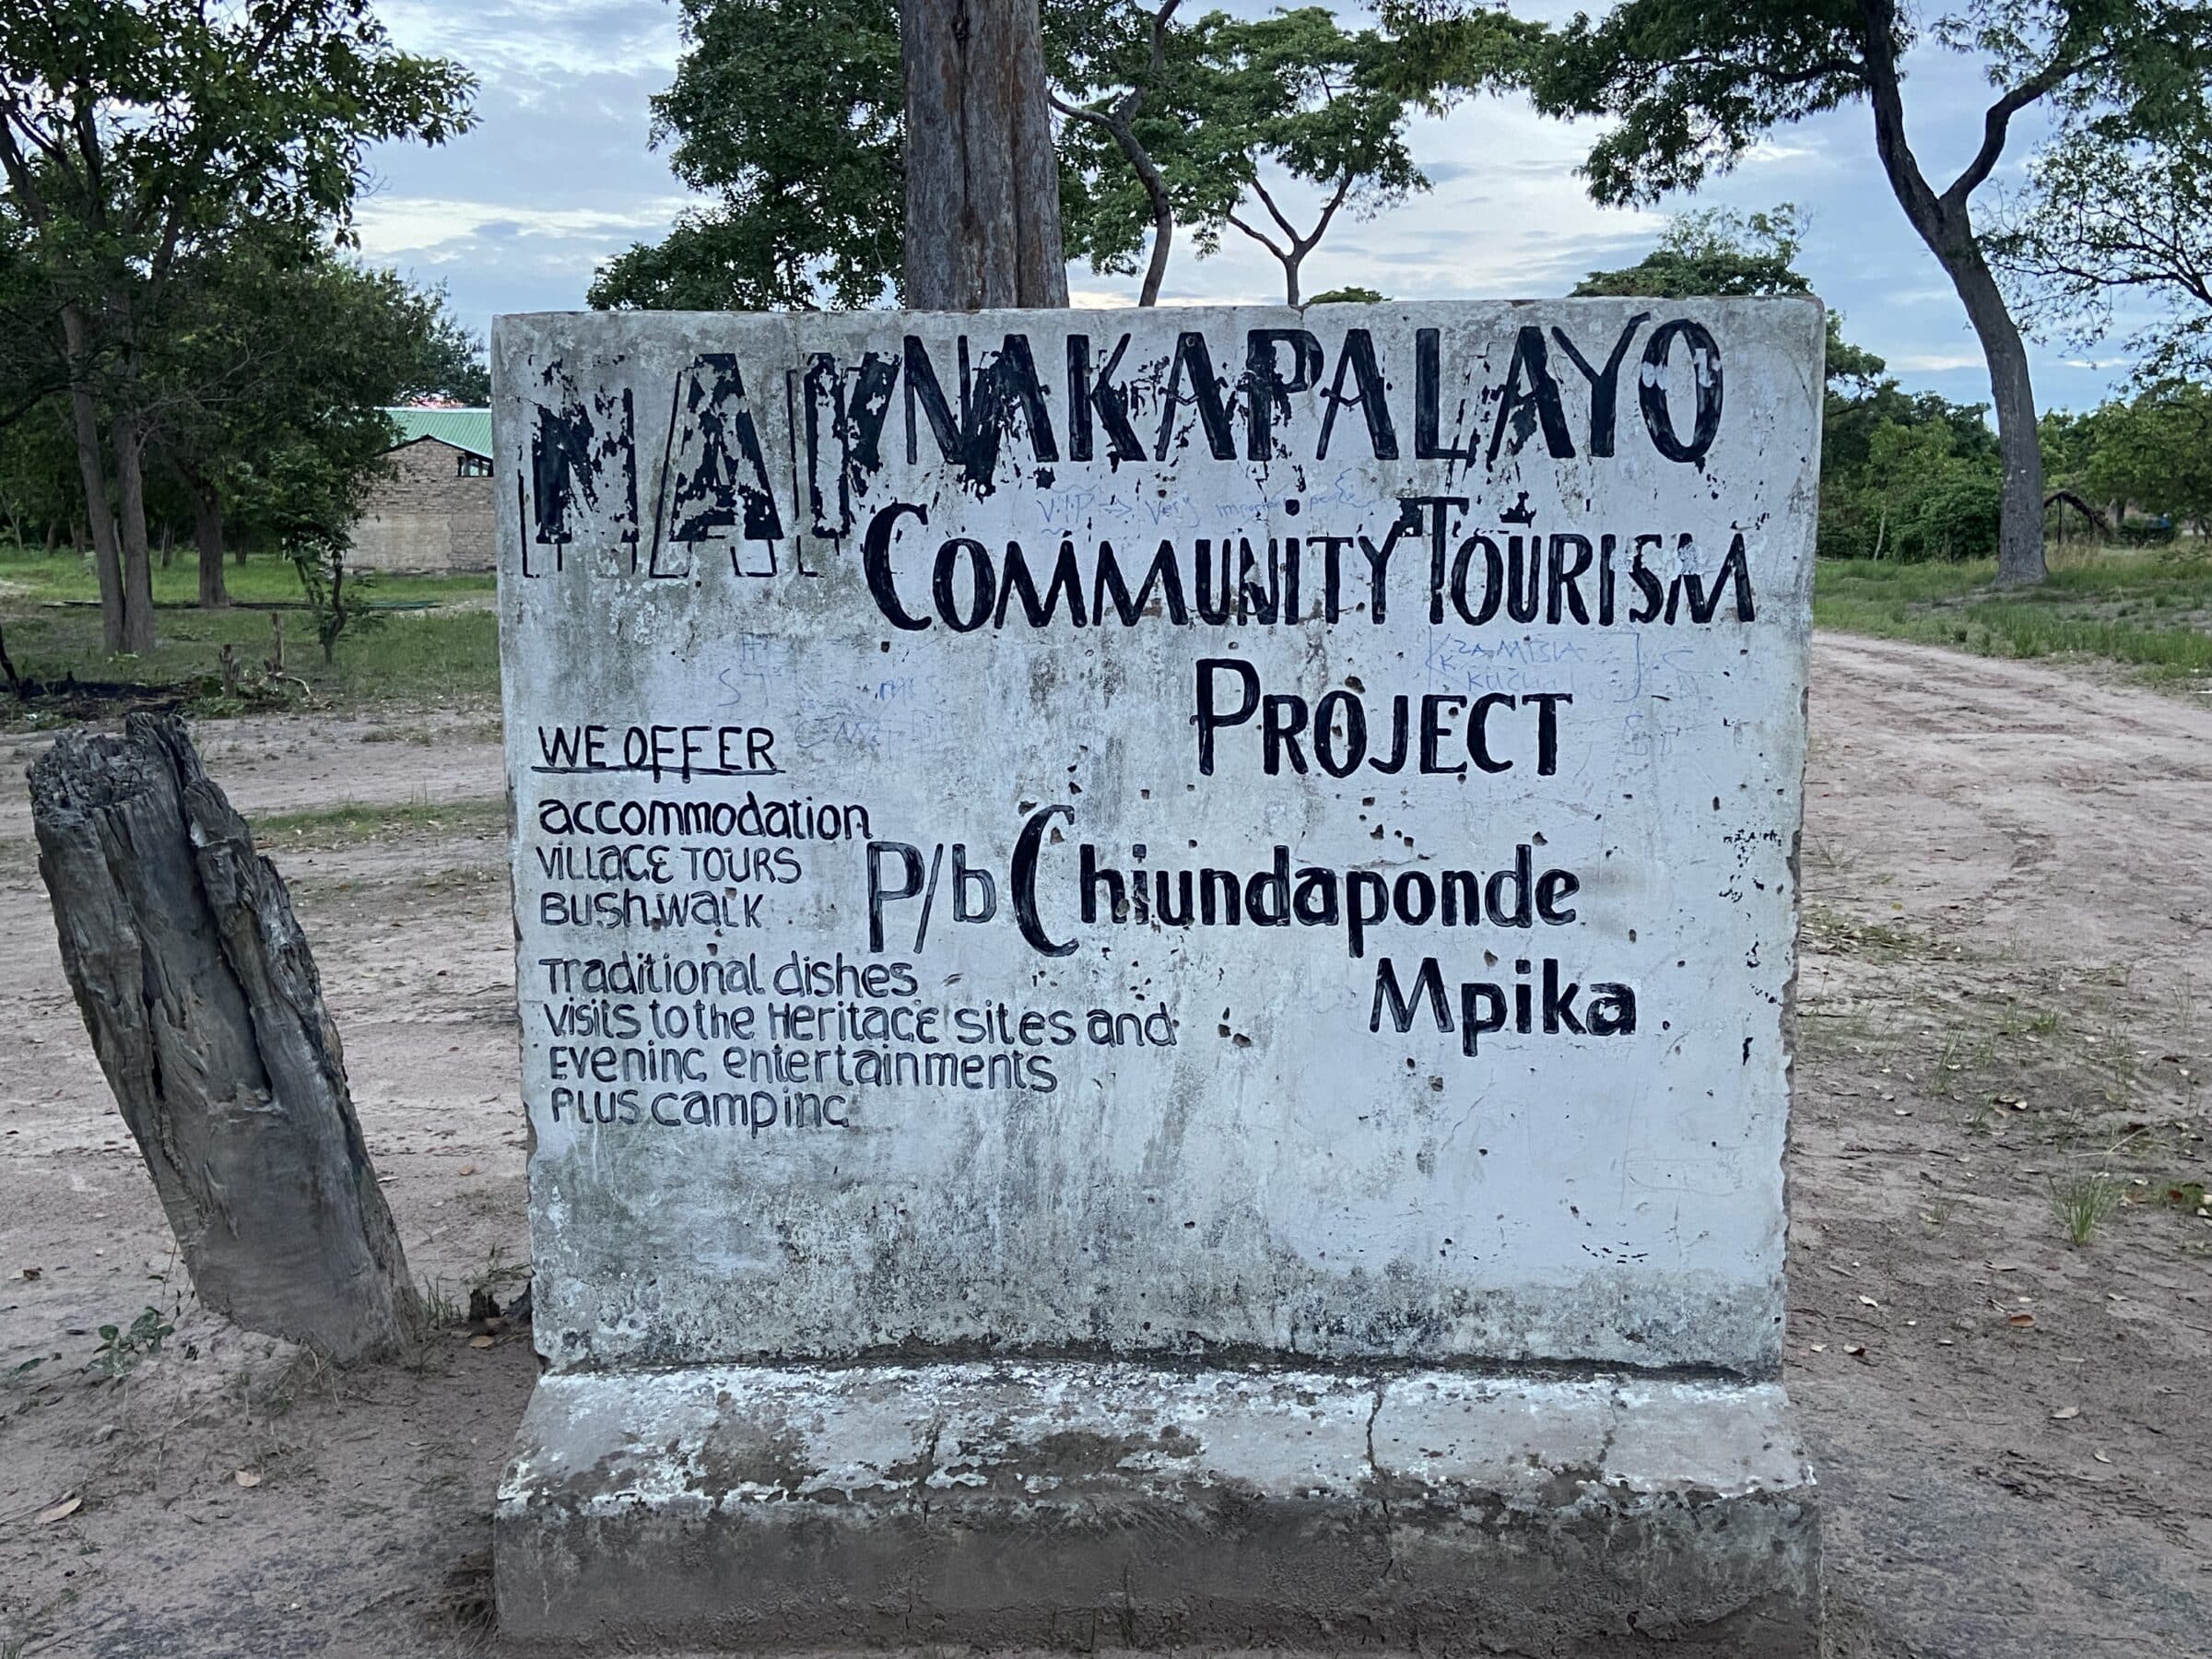 Naknakapalayo | Överlandning i Zambia